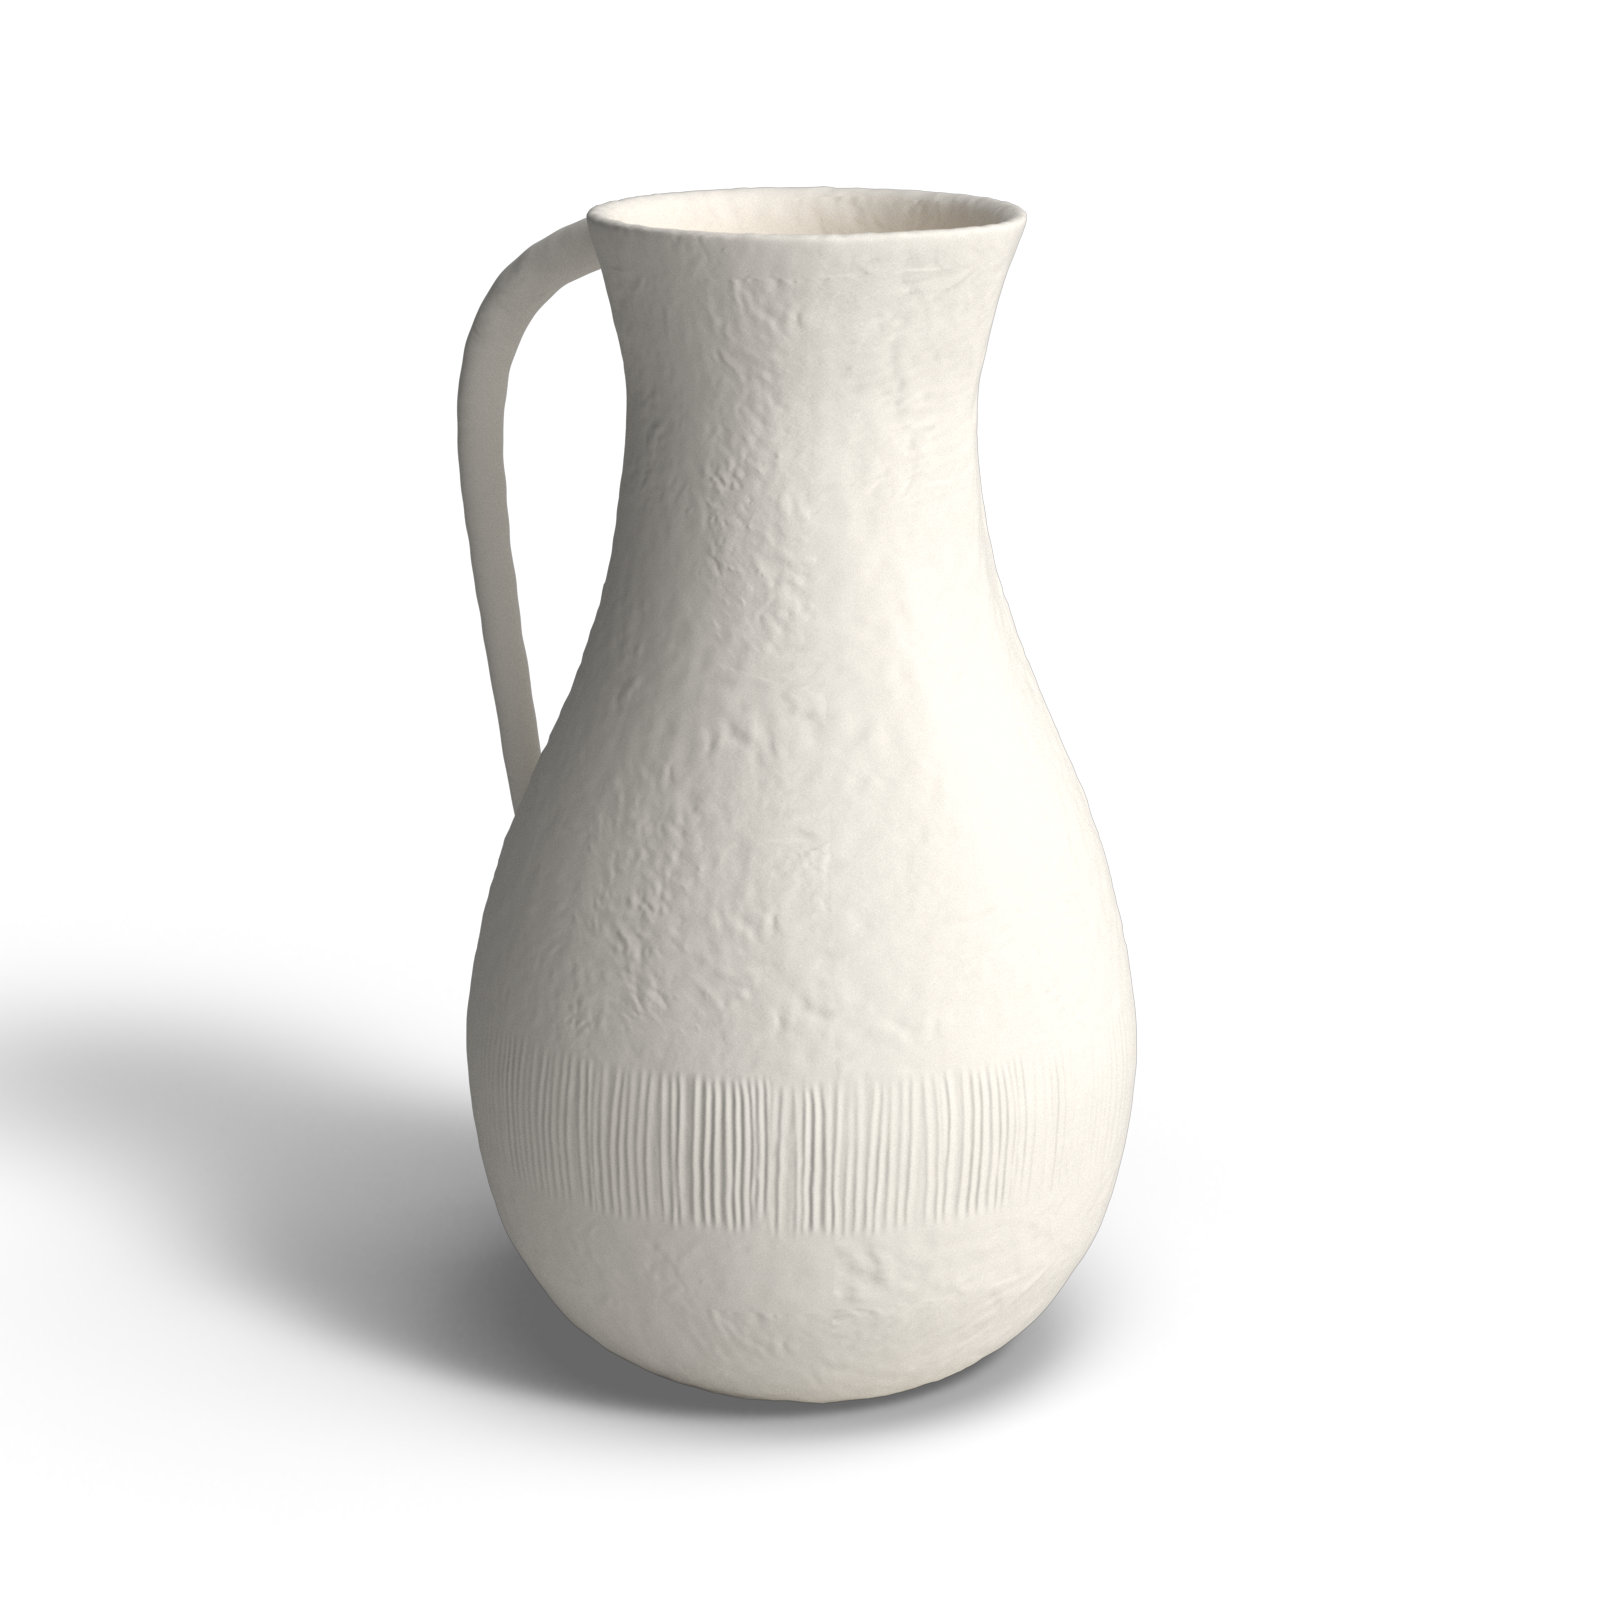 Rouen Ceramic Table Vase